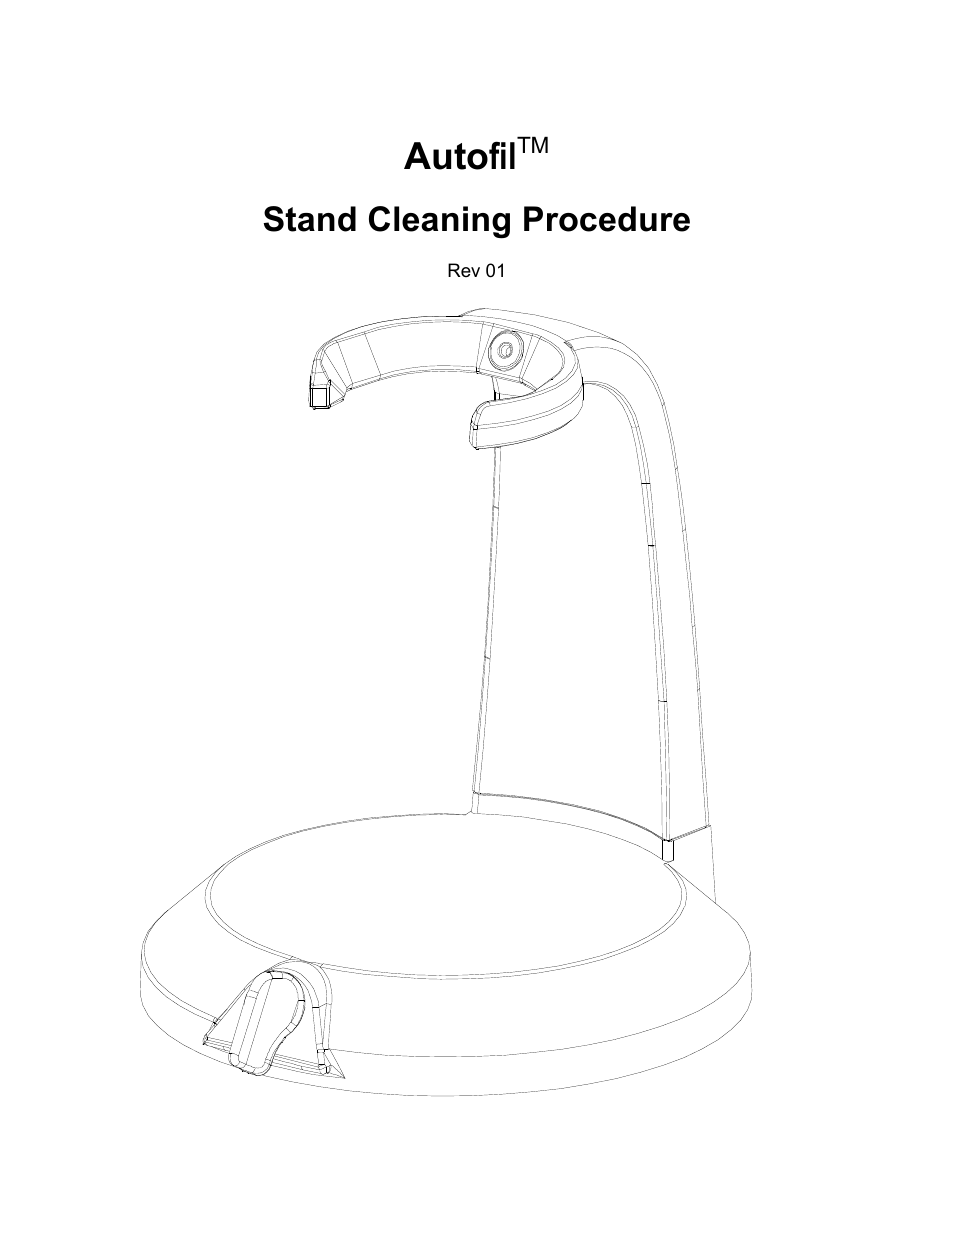 Foxx Autofil Pedestal and Cradle Ring